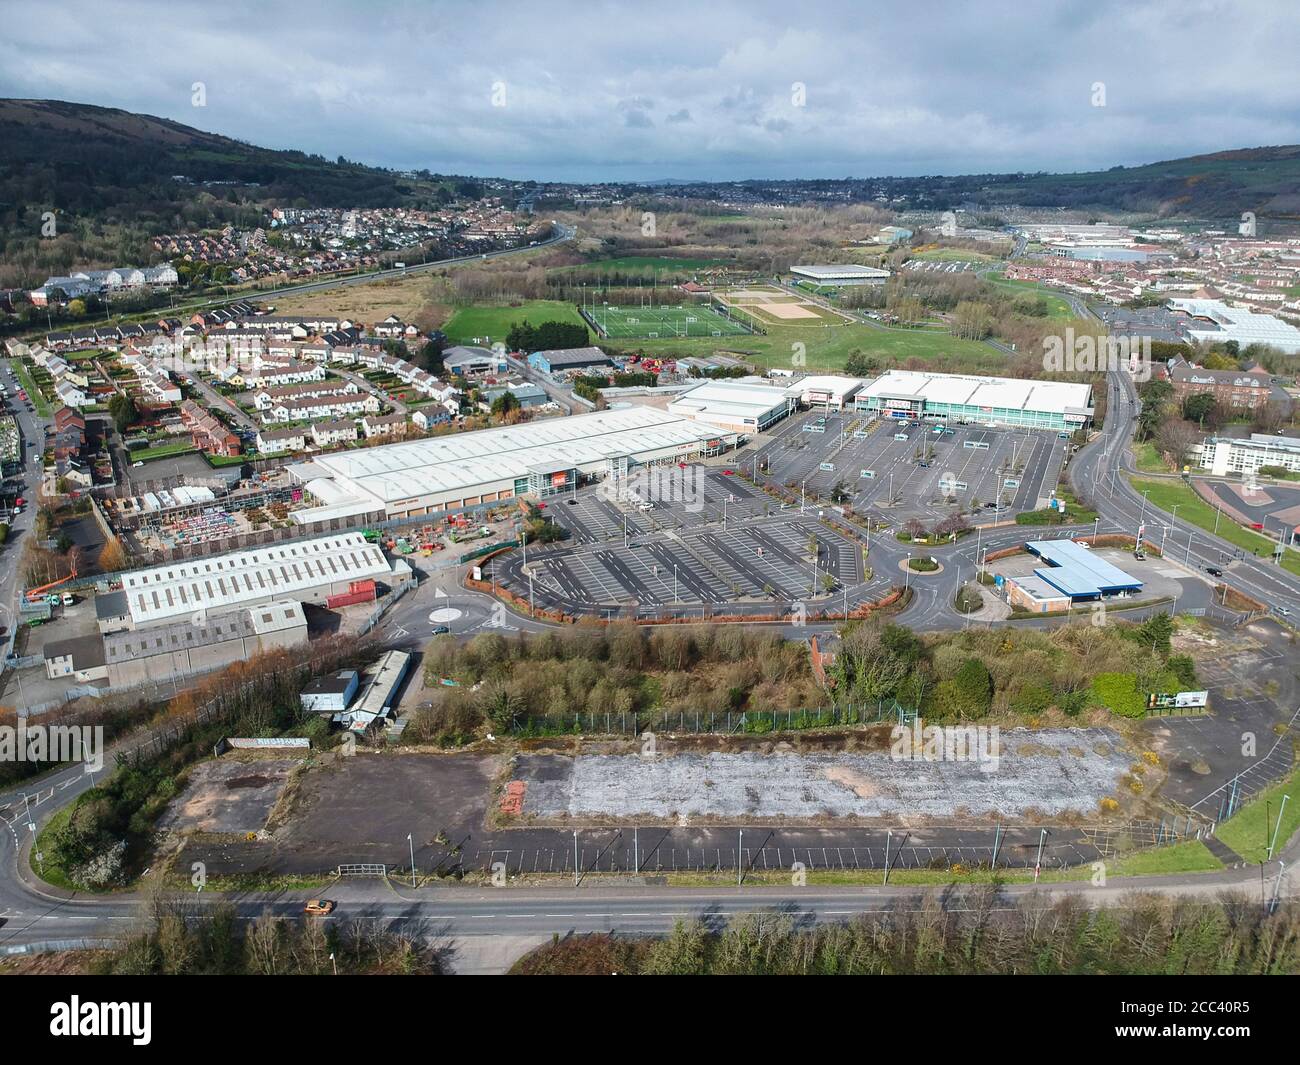 Image de drone du parking. Abbey Retail Park, Belfast, Belfast, Irlande. Architecte: N/A, 2019. Banque D'Images